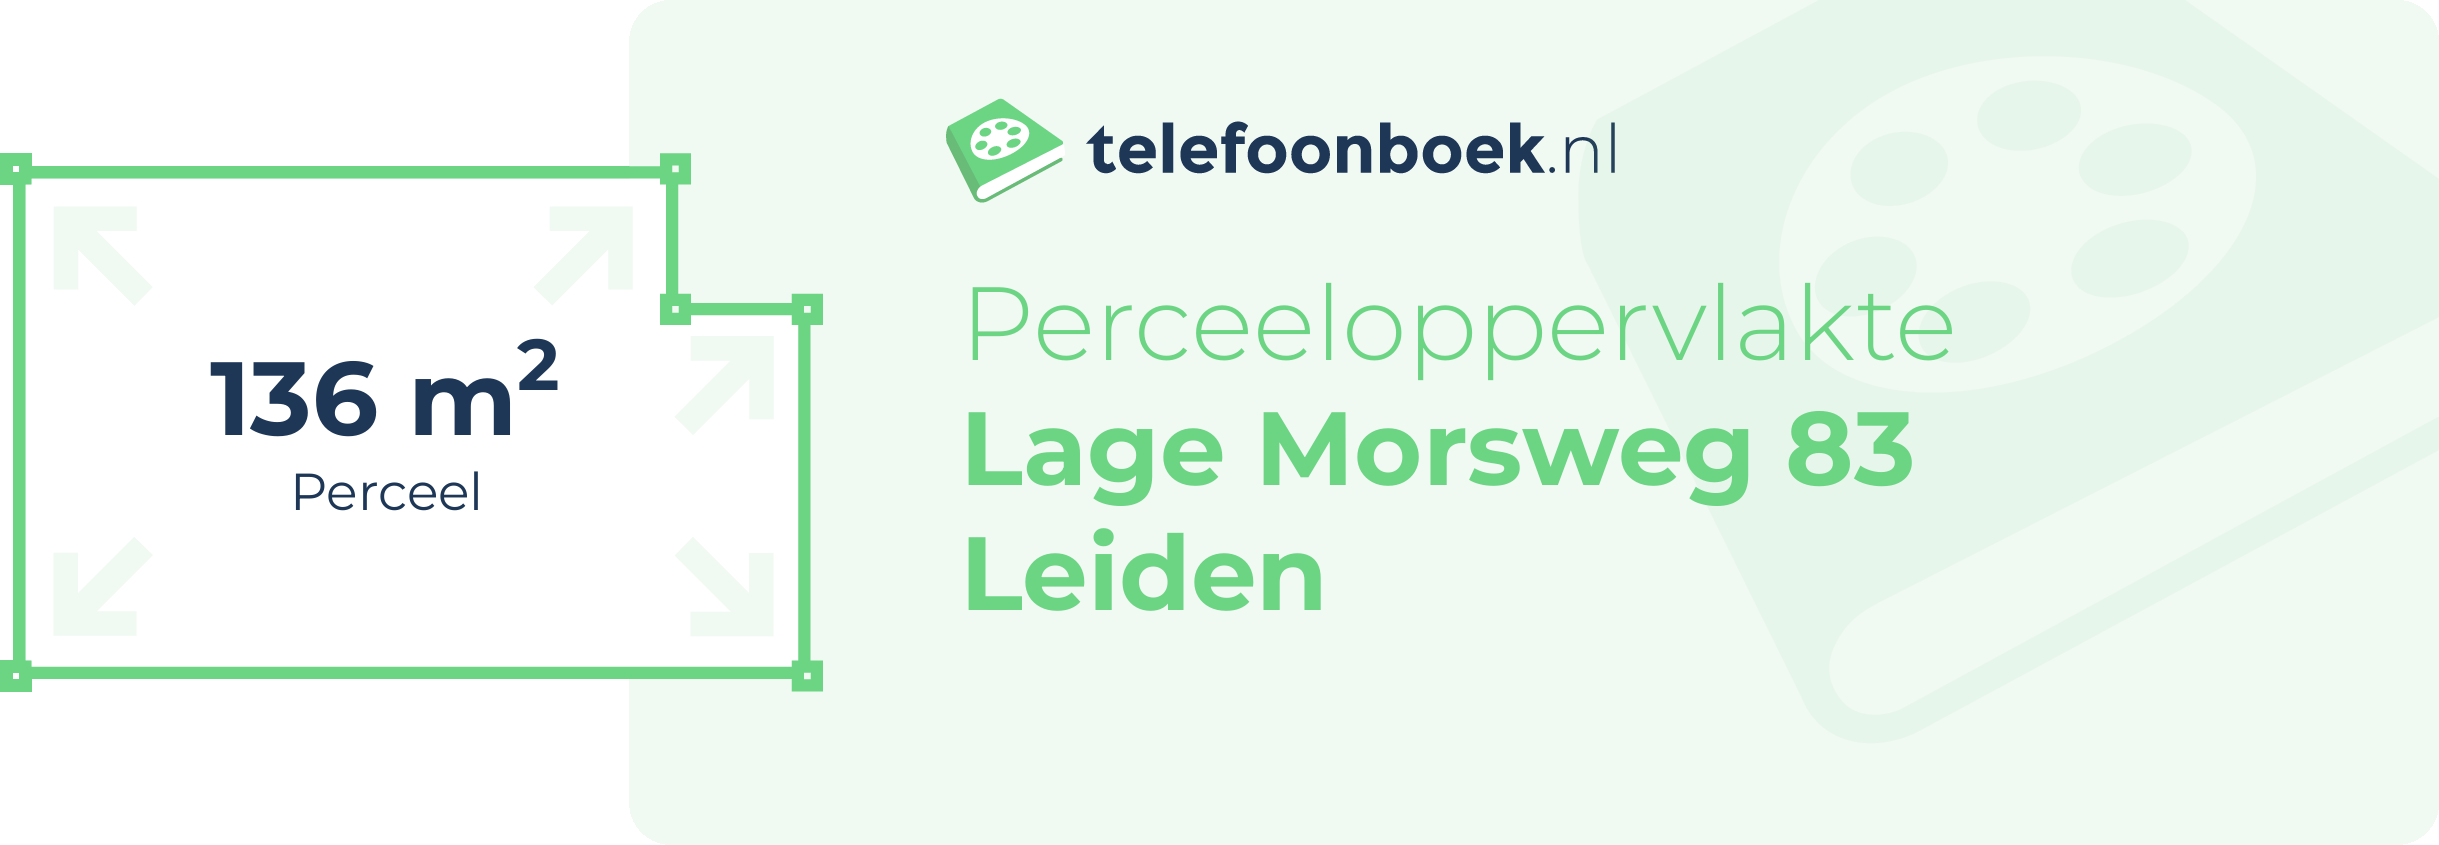 Perceeloppervlakte Lage Morsweg 83 Leiden